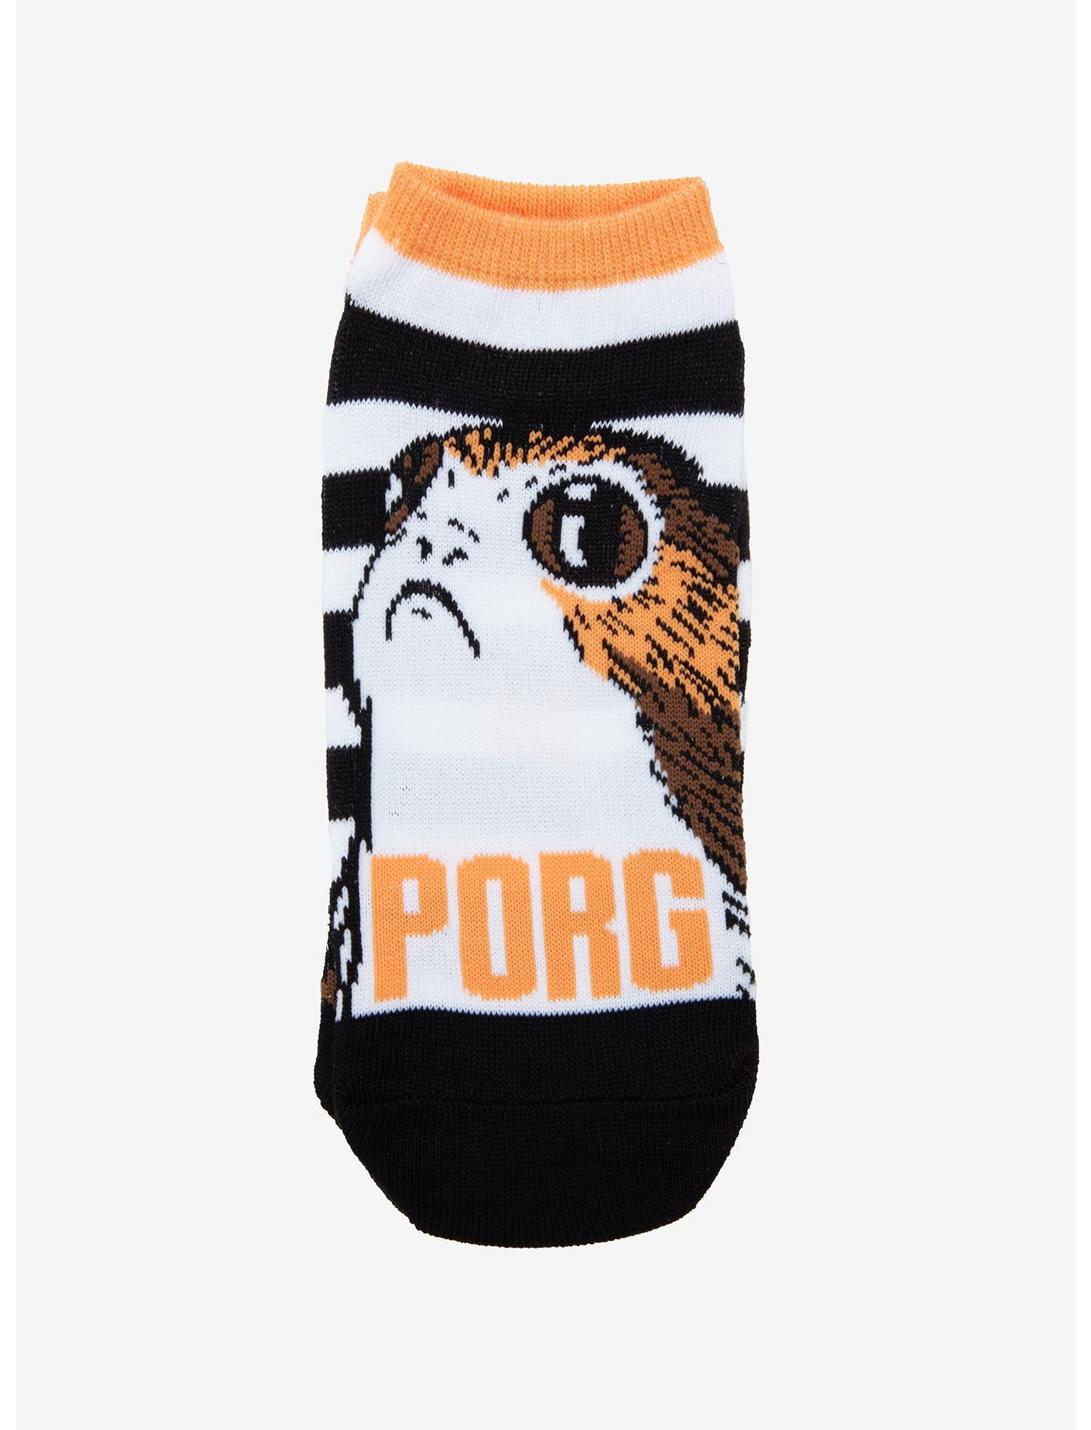 Star Wars Porg No-Show Socks, , hi-res